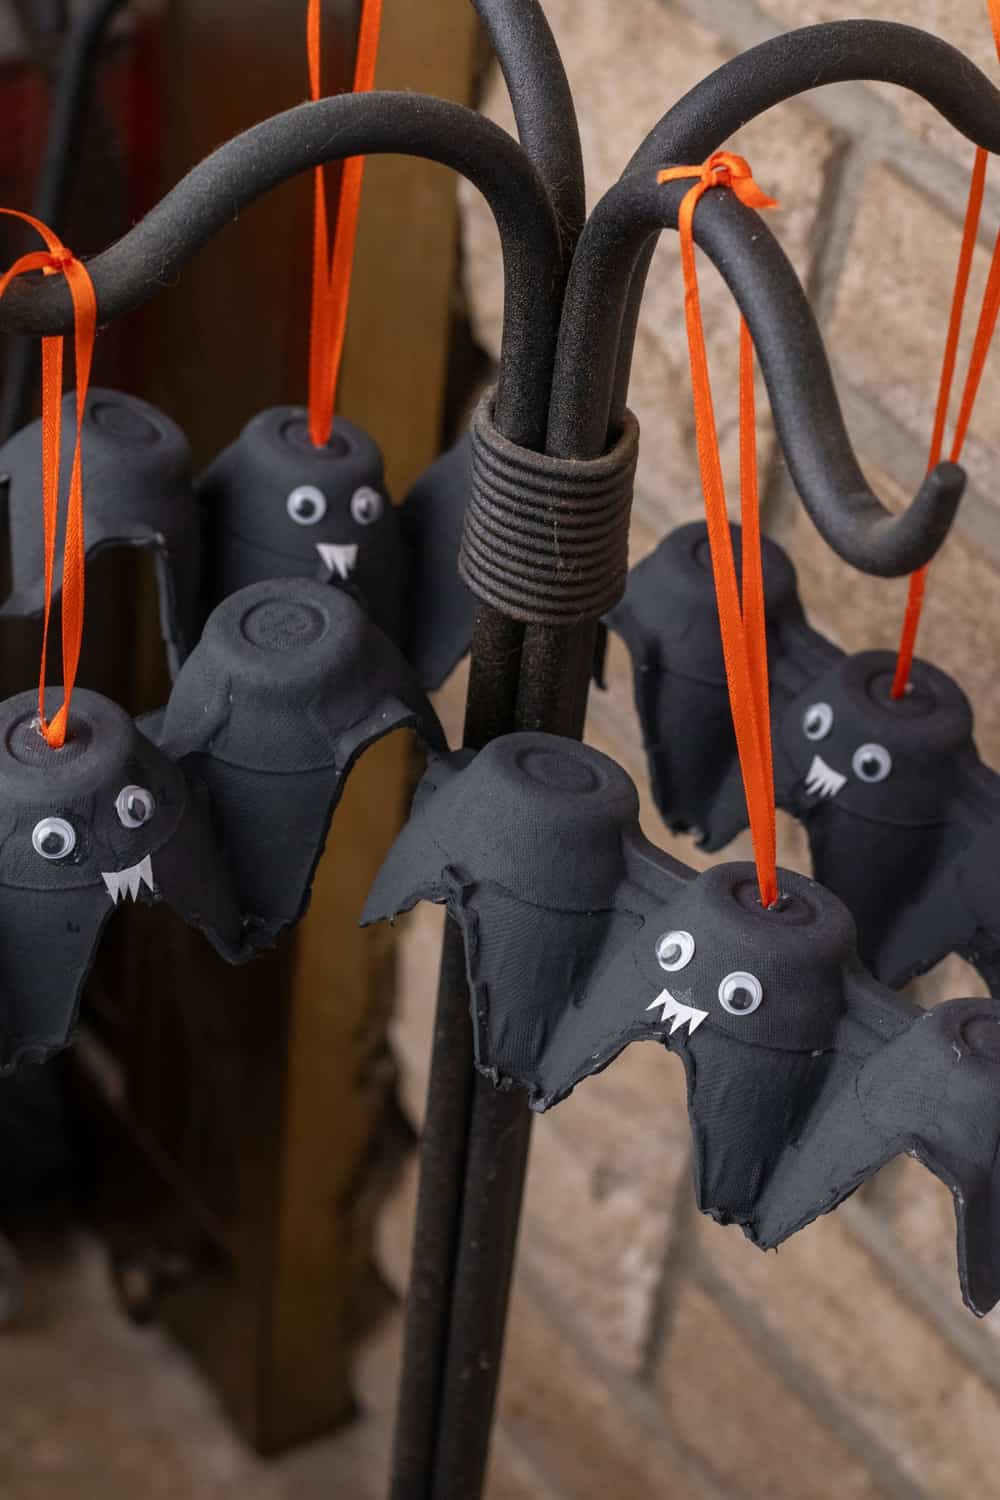 DIY Egg Carton Bats